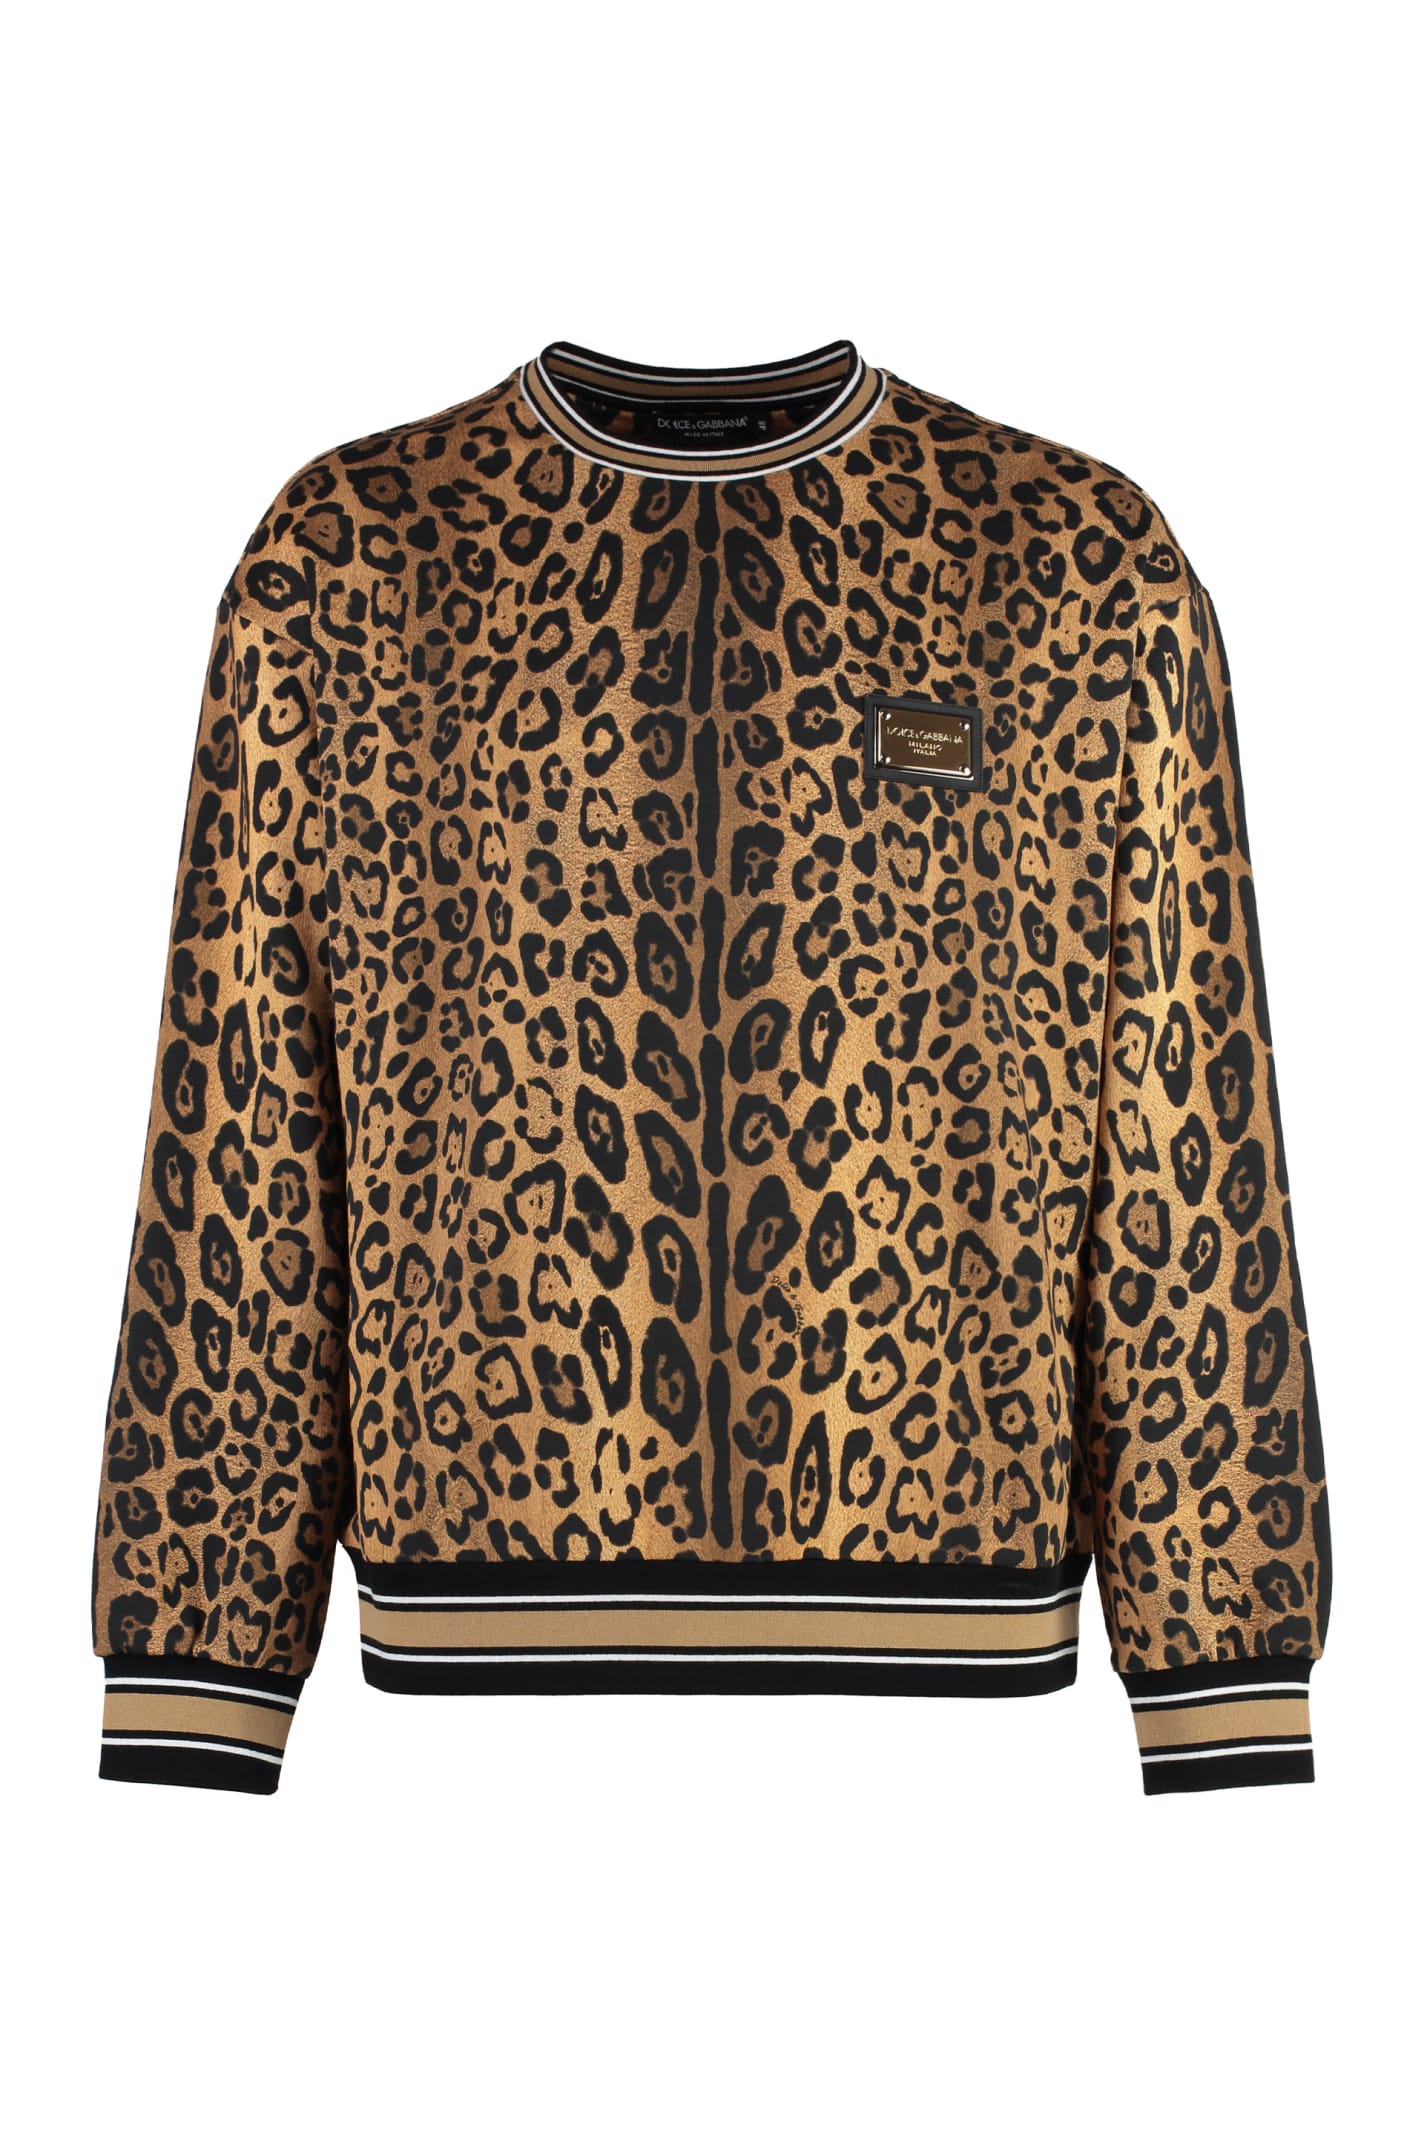 Dolce & Gabbana Cotton Crew-neck Sweatshirt In Beige